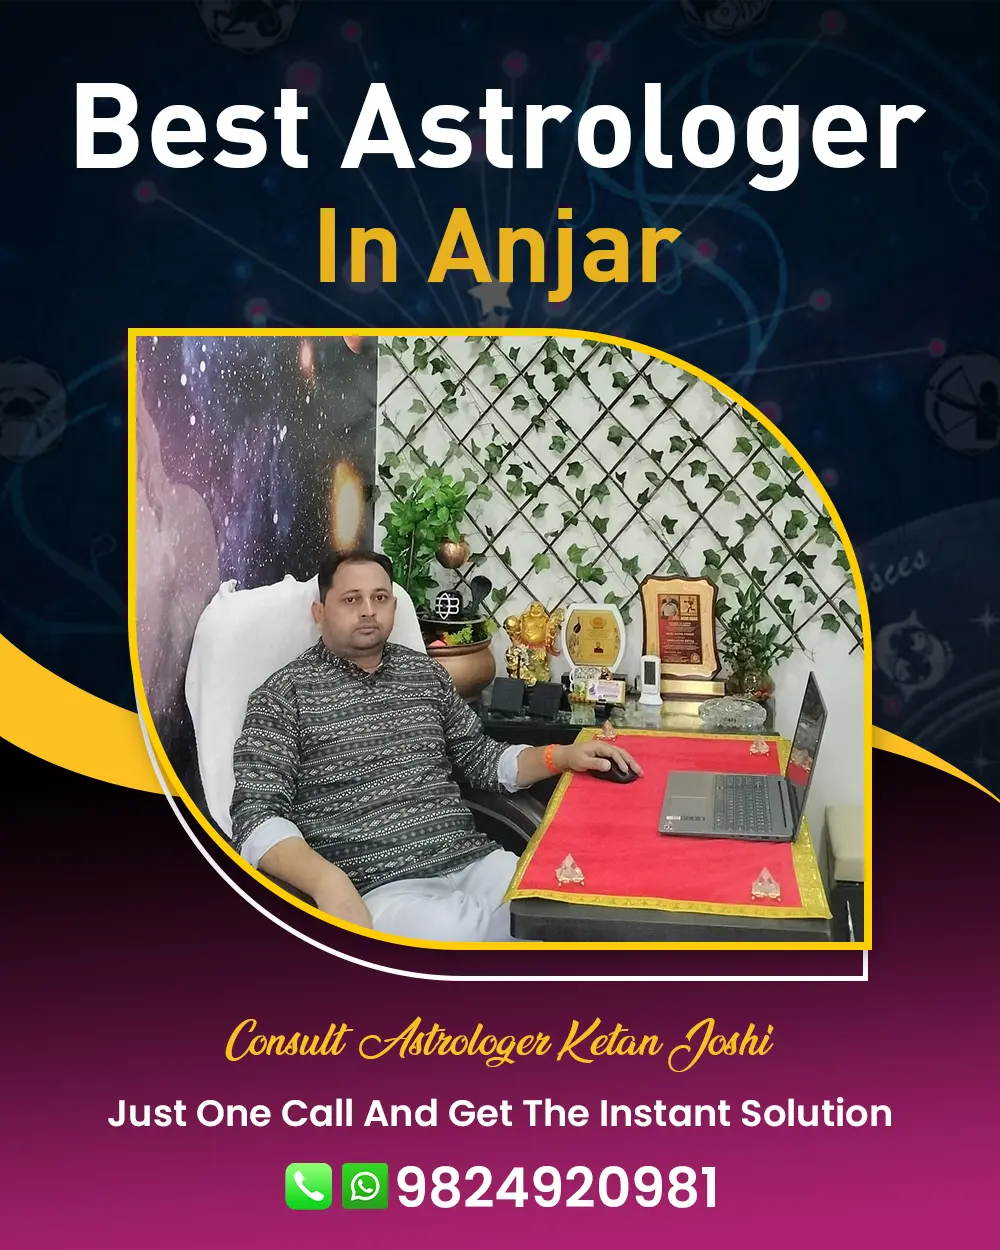 Best Astrologer In Anjar